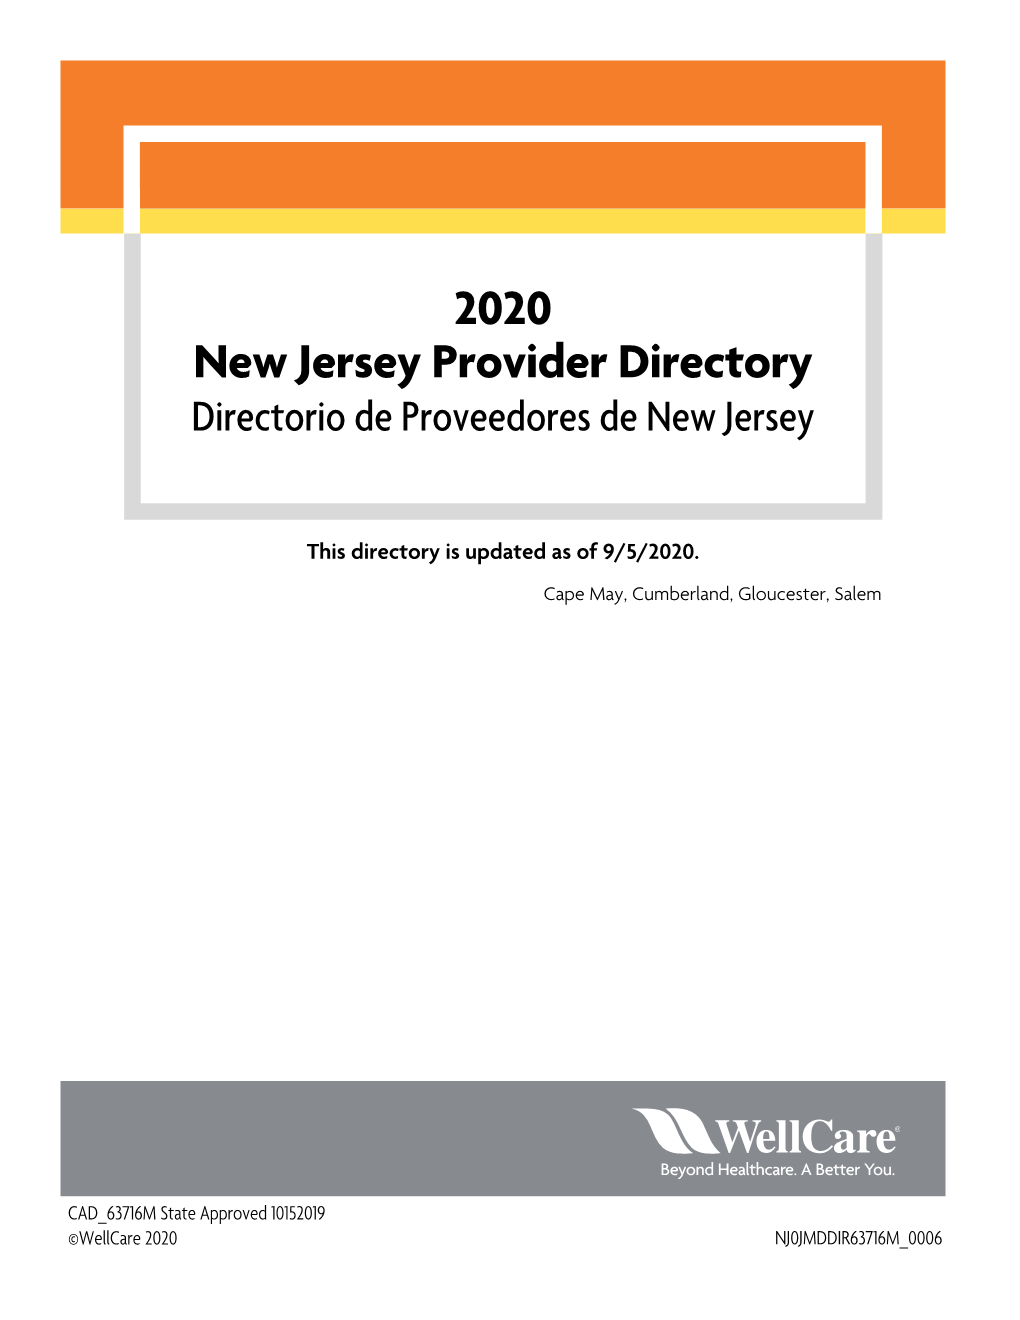 2020 New Jersey Provider Directory Directorio De Proveedores De New Jersey